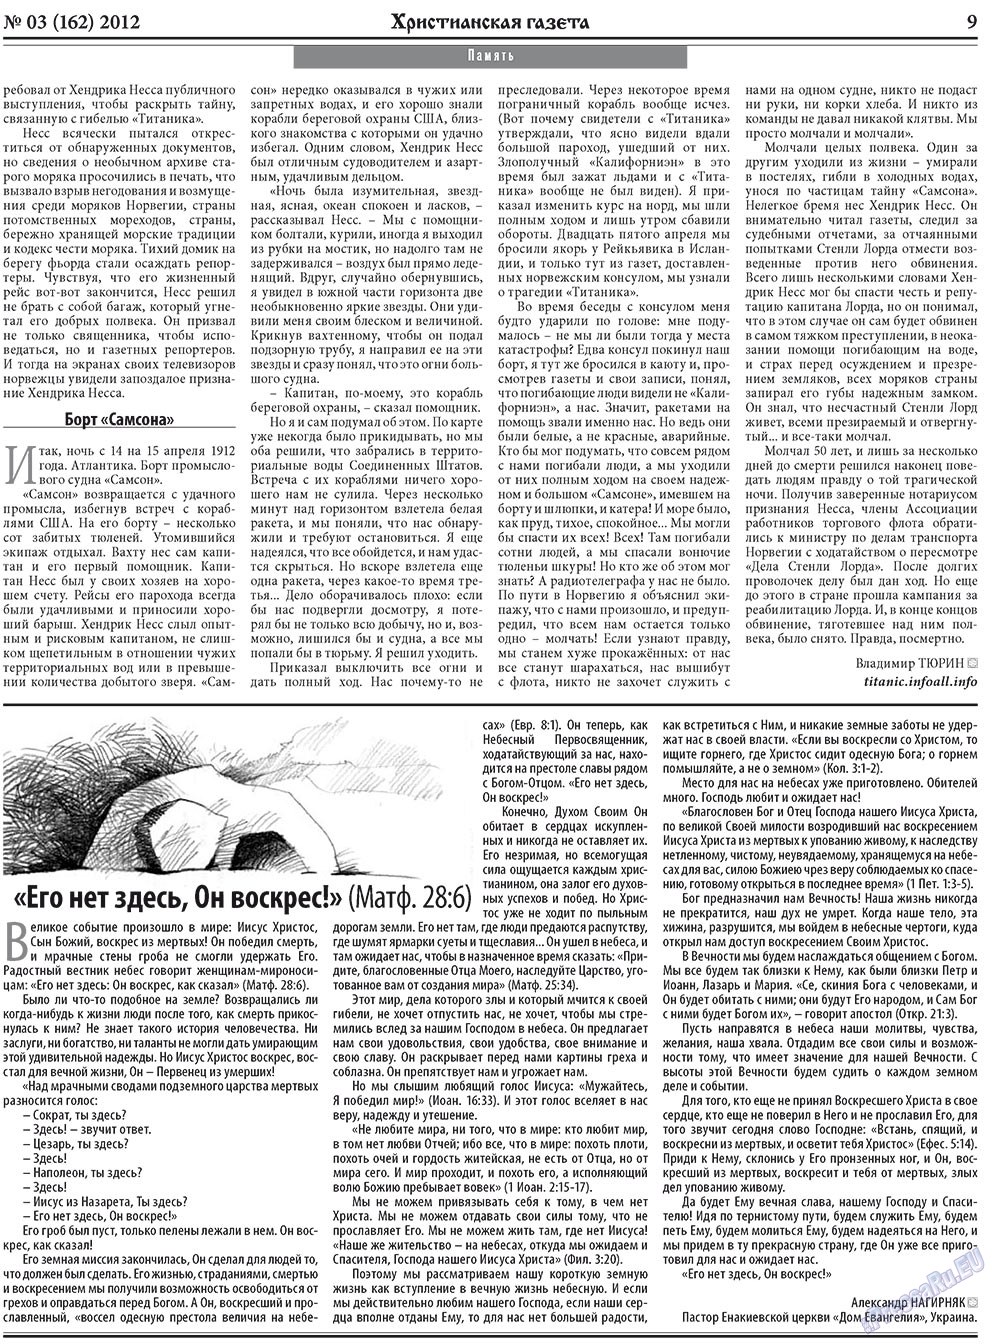 Христианская газета (газета). 2012 год, номер 3, стр. 9